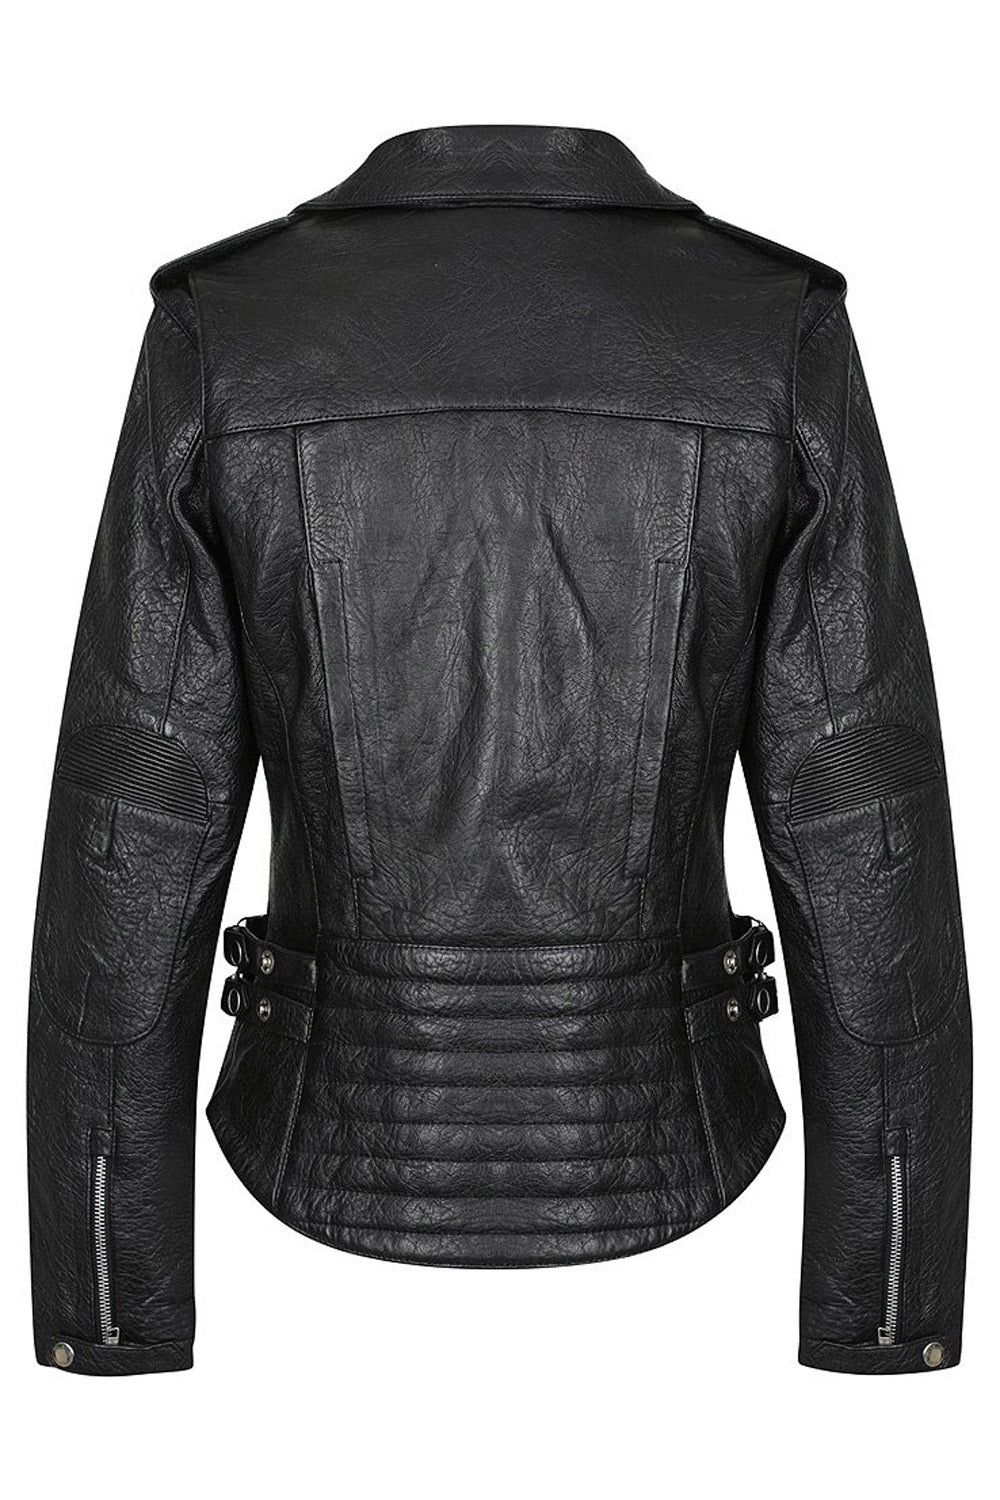 Black Arrow Label Gypsy Women's Leather Motorcycle Jacket - Moto Est.